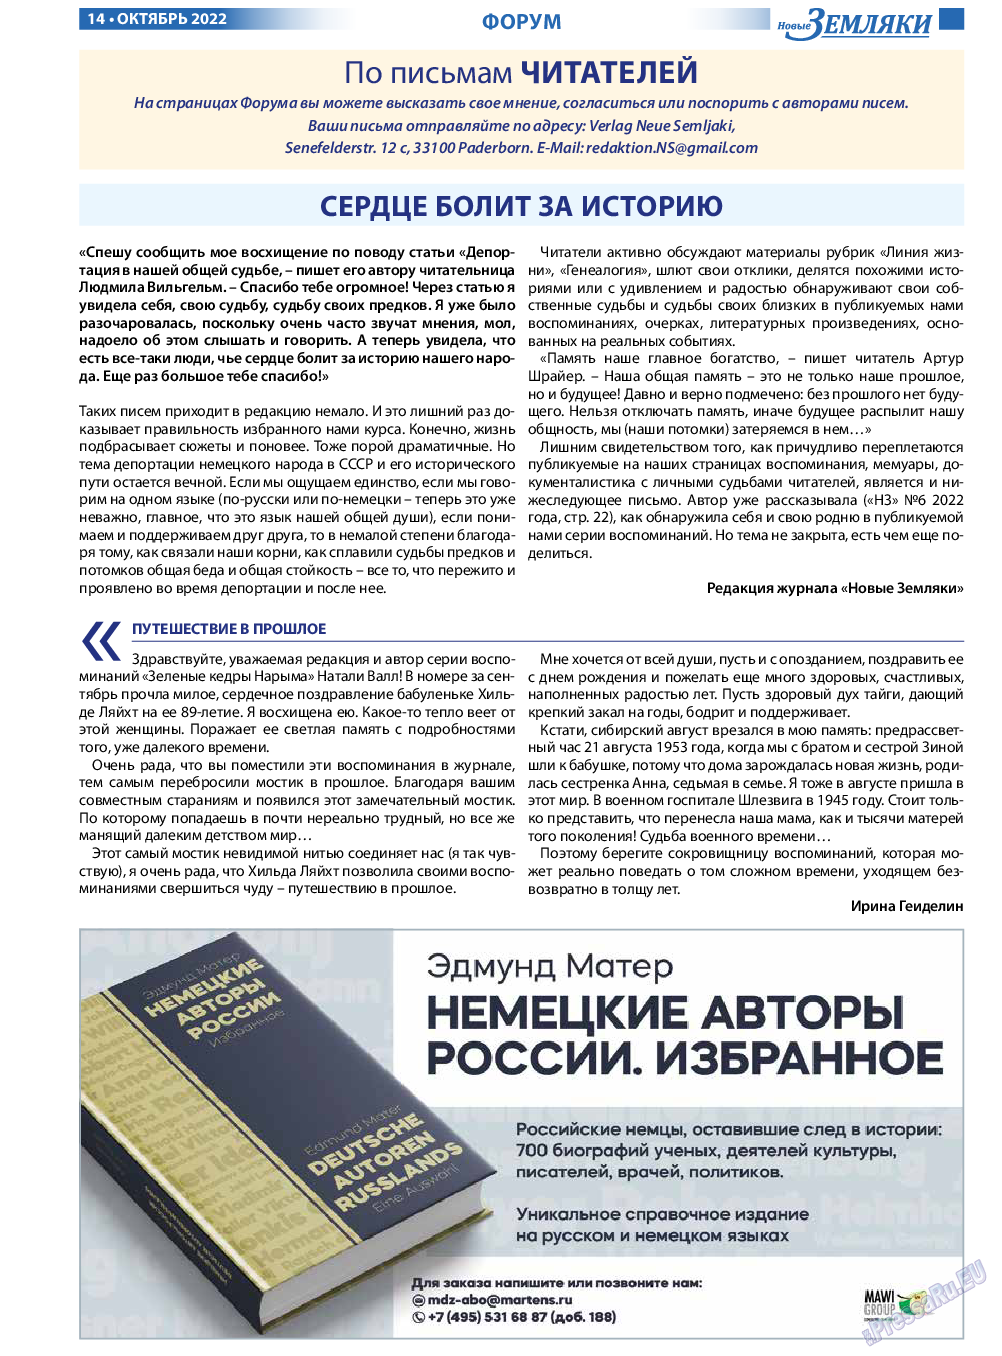 Новые Земляки, газета. 2022 №10 стр.14